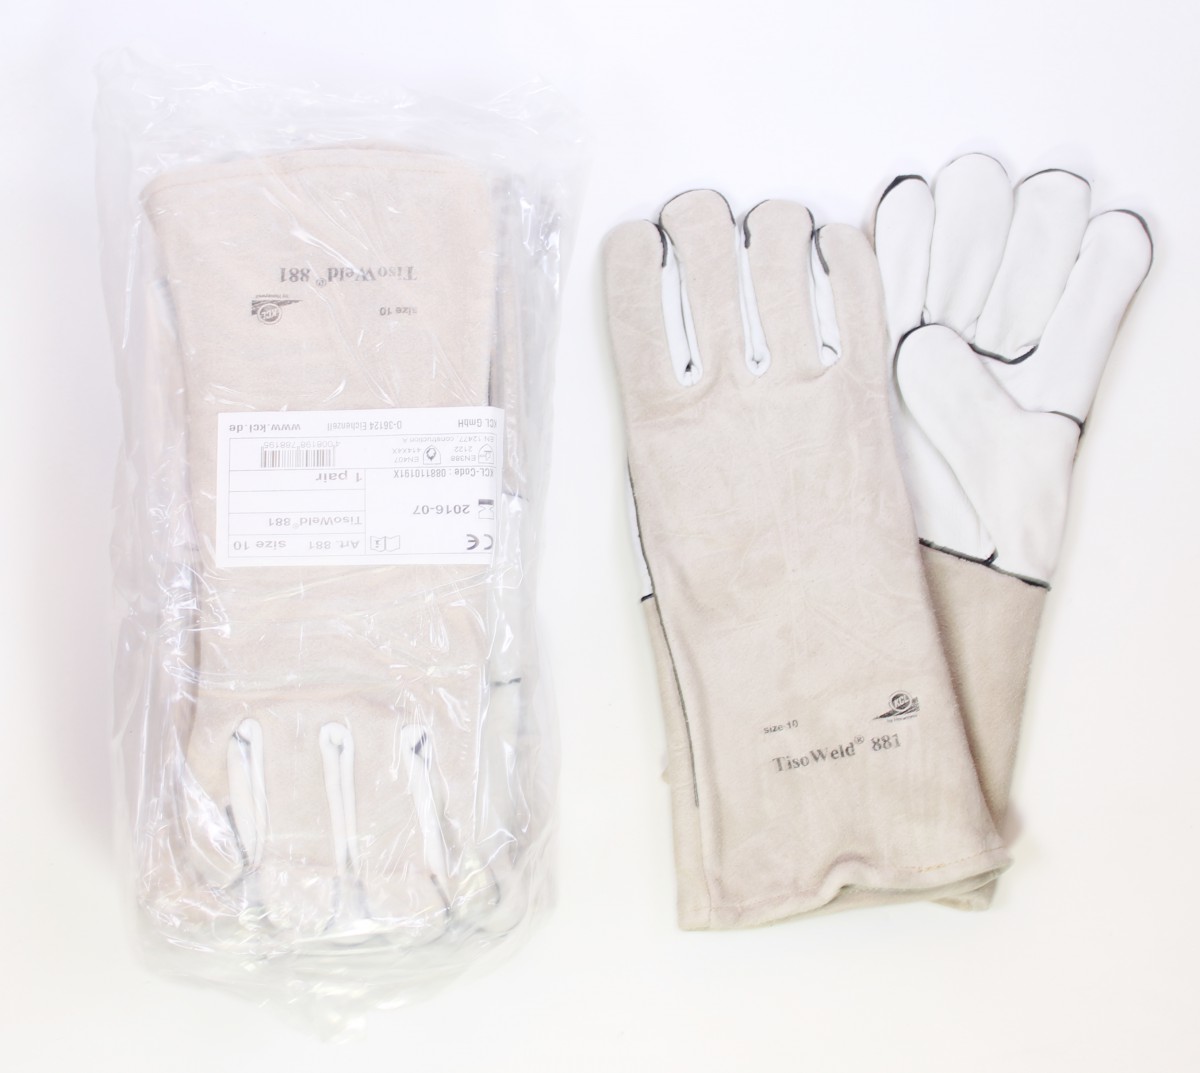 KCL Hitzeschutzhandschuhe TisoWeld 881 HONEYWELL Gr. 9 Handschuhe Schweißen